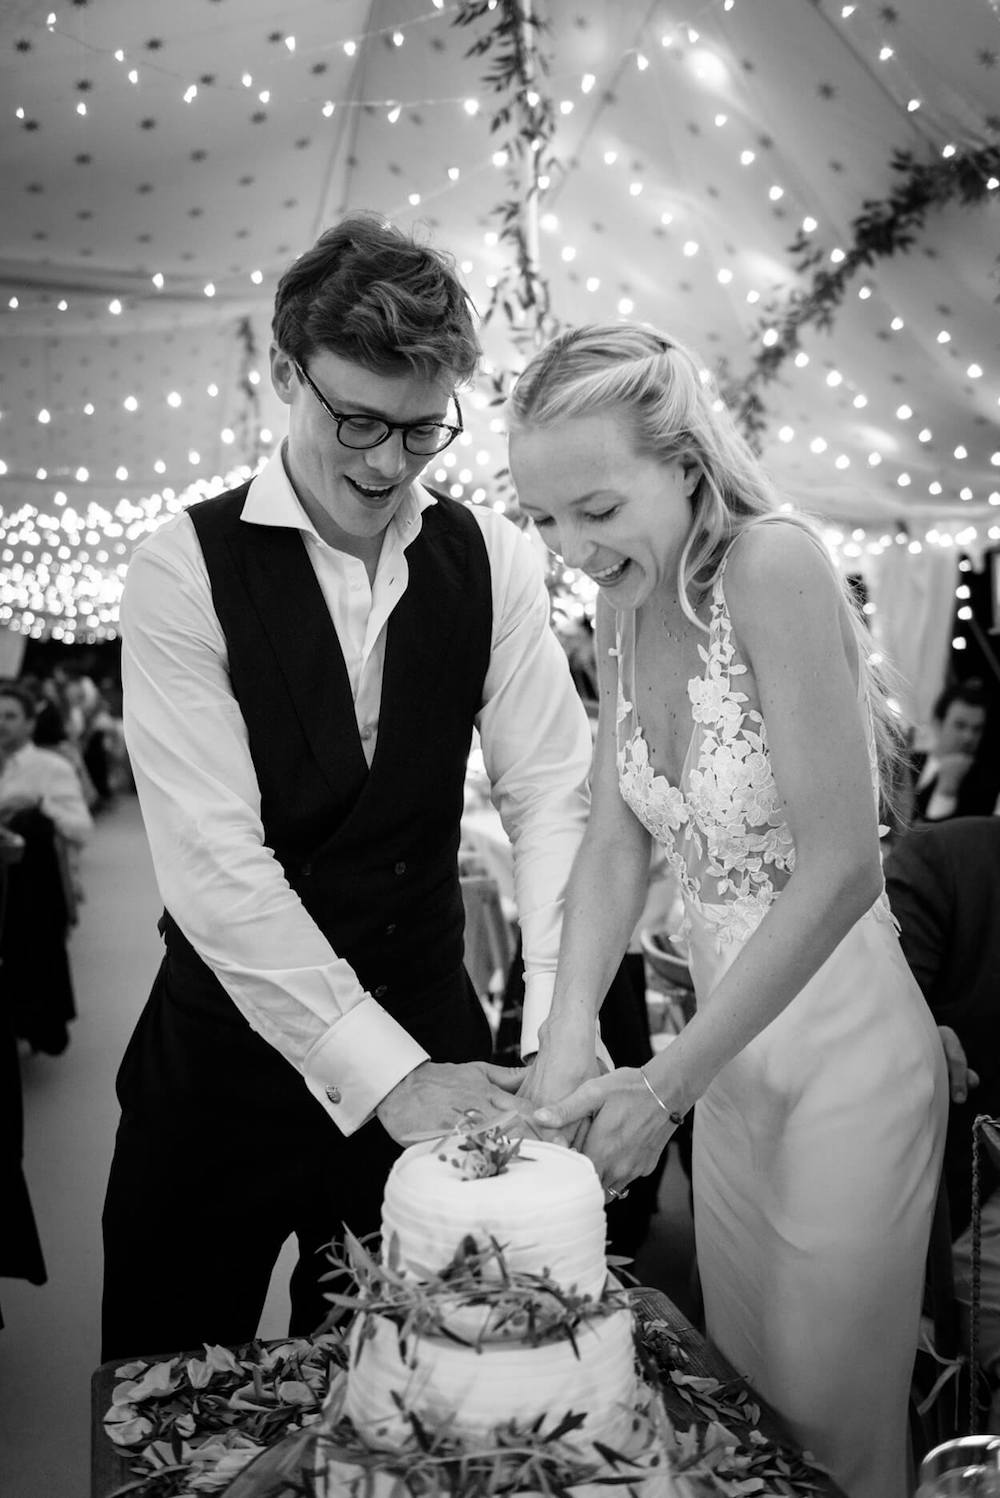 bride groom cutting cake olive tree decoration festoon lighting